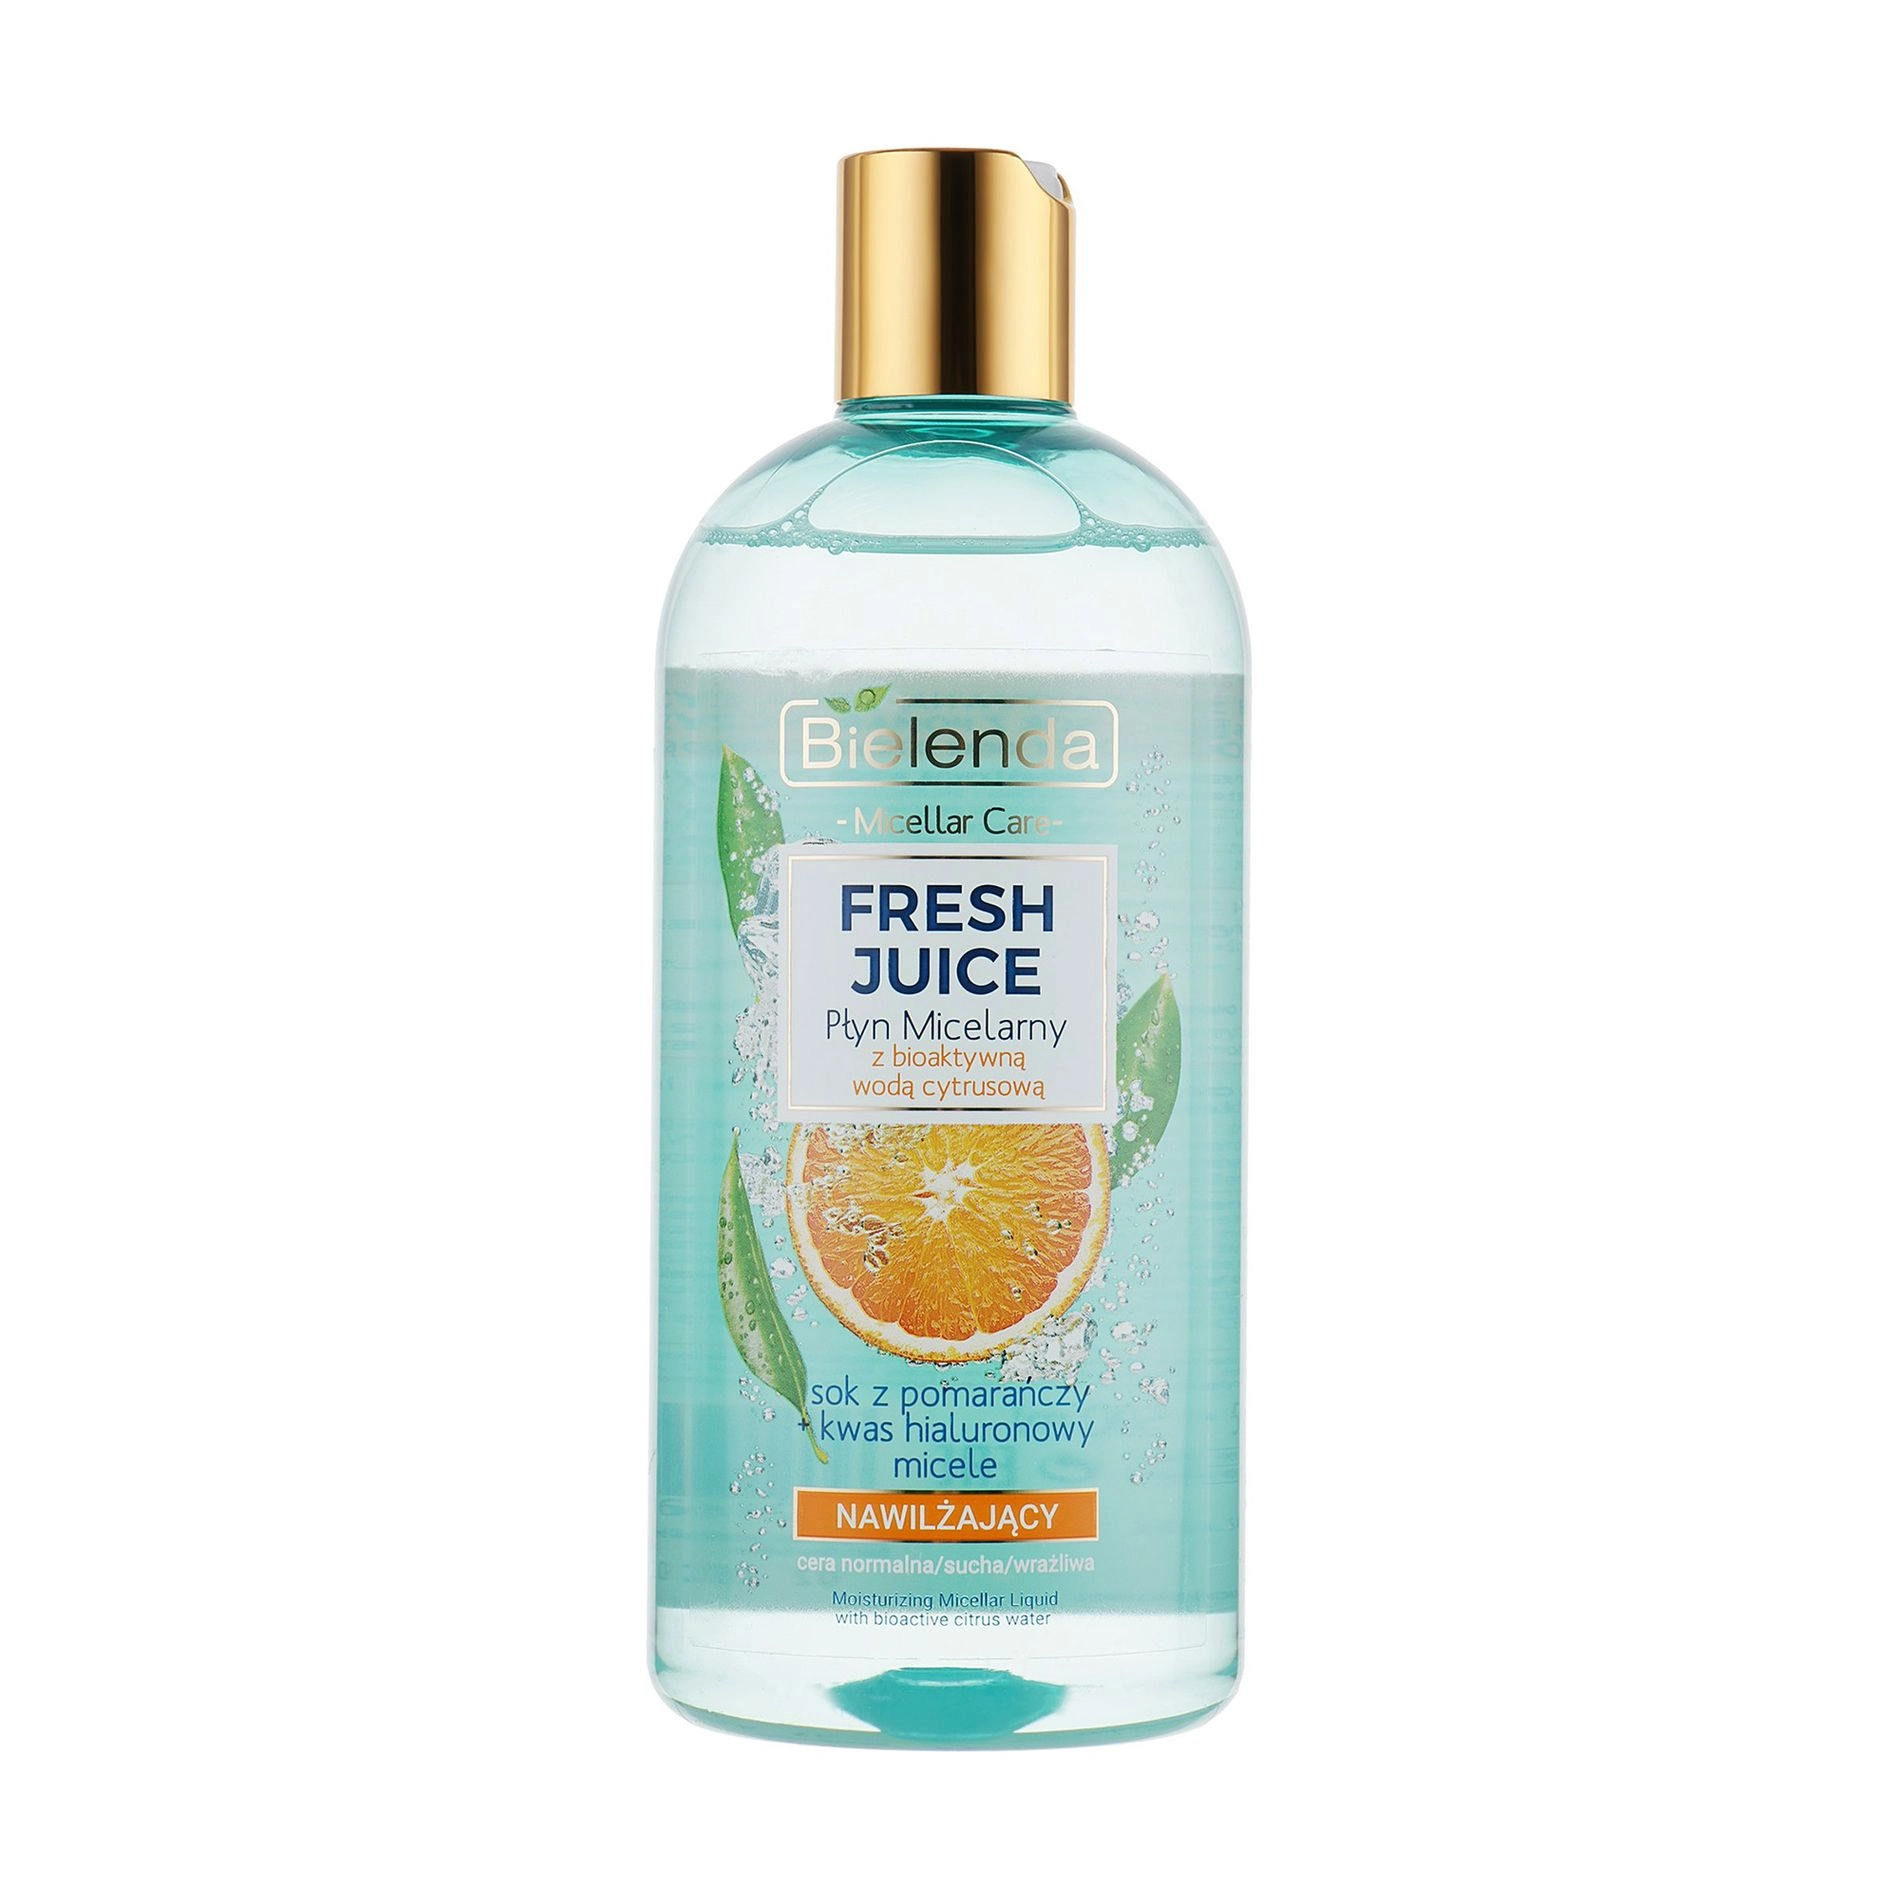 Bielenda Мицеллярная жидкость для лица Fresh juice увлажняющая, апельсин, 500 мл - фото N1